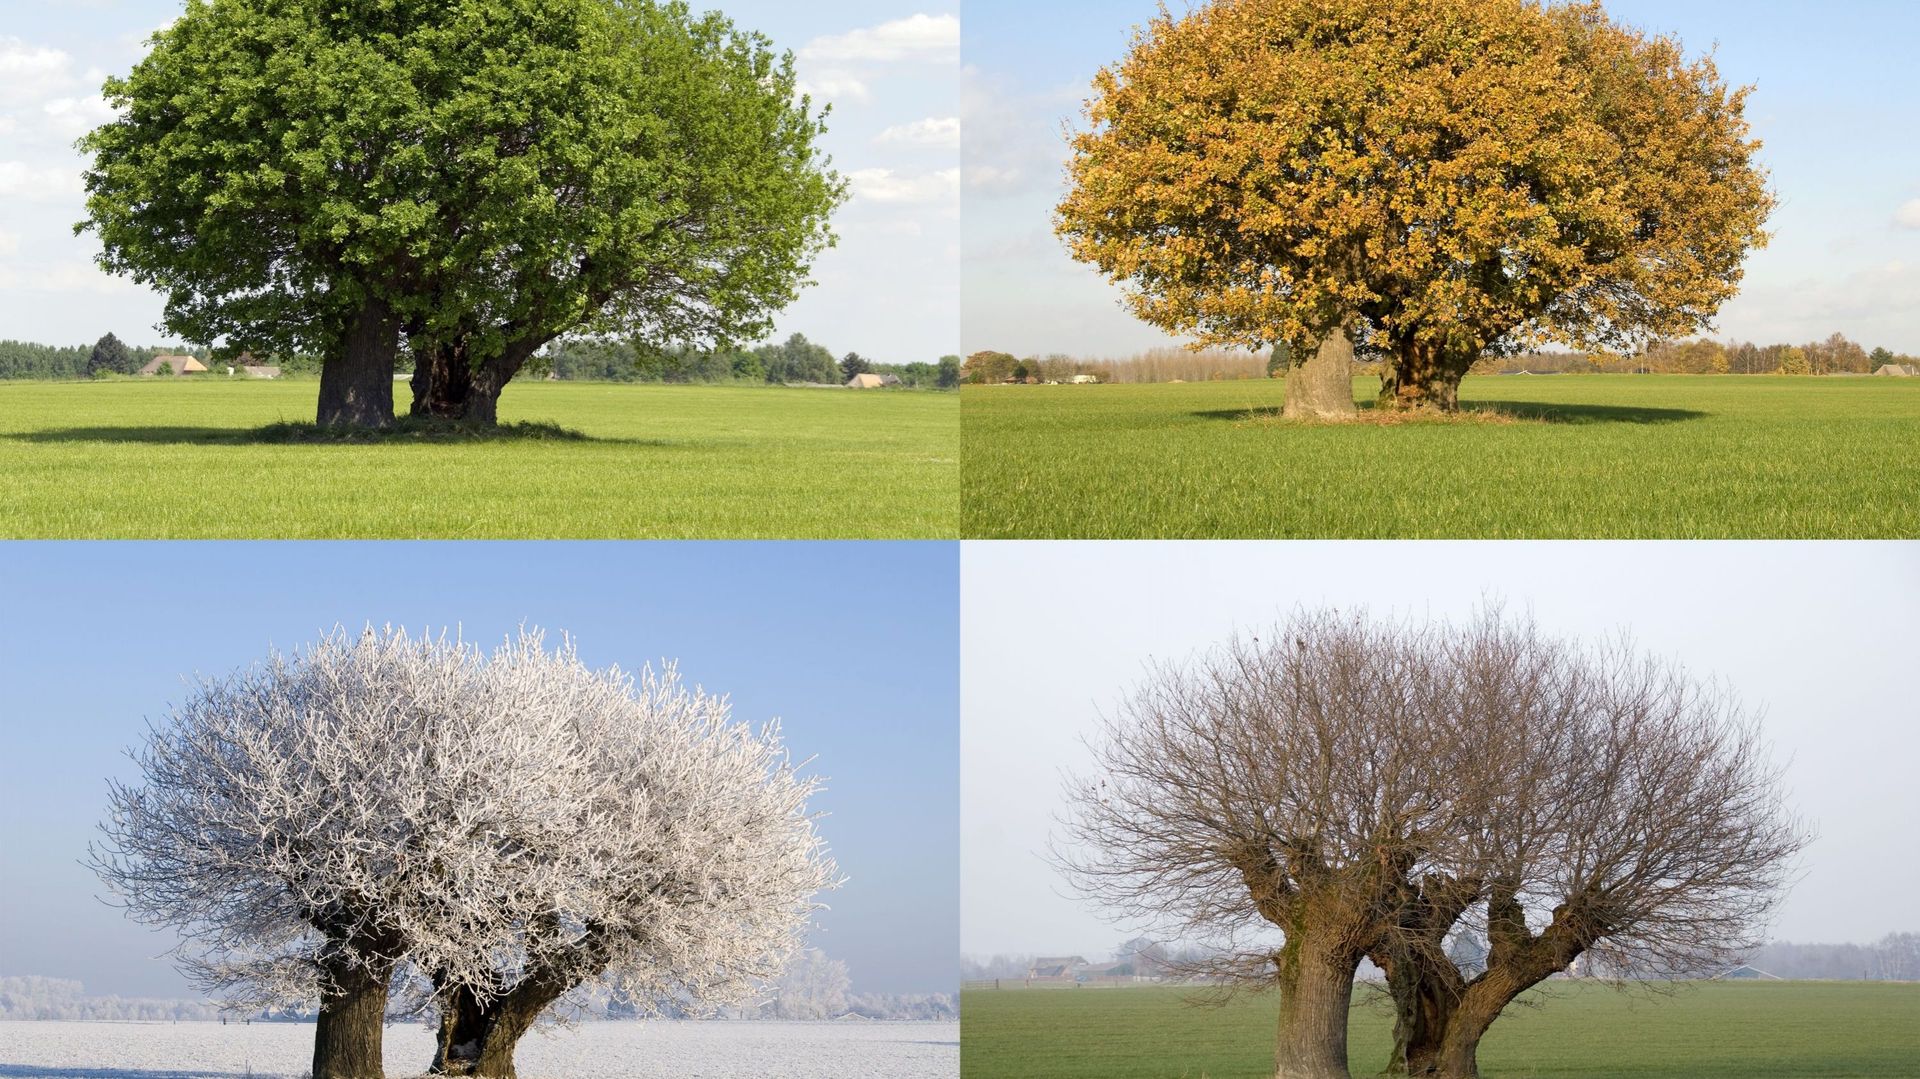 Concours photos sur les arbres remarquables au coeur des communes de Martelange, Vaux-sur-Sûre, Neufchâteau, Libramont, Libin, Léglise, Saint-Hubert et Fauvillers